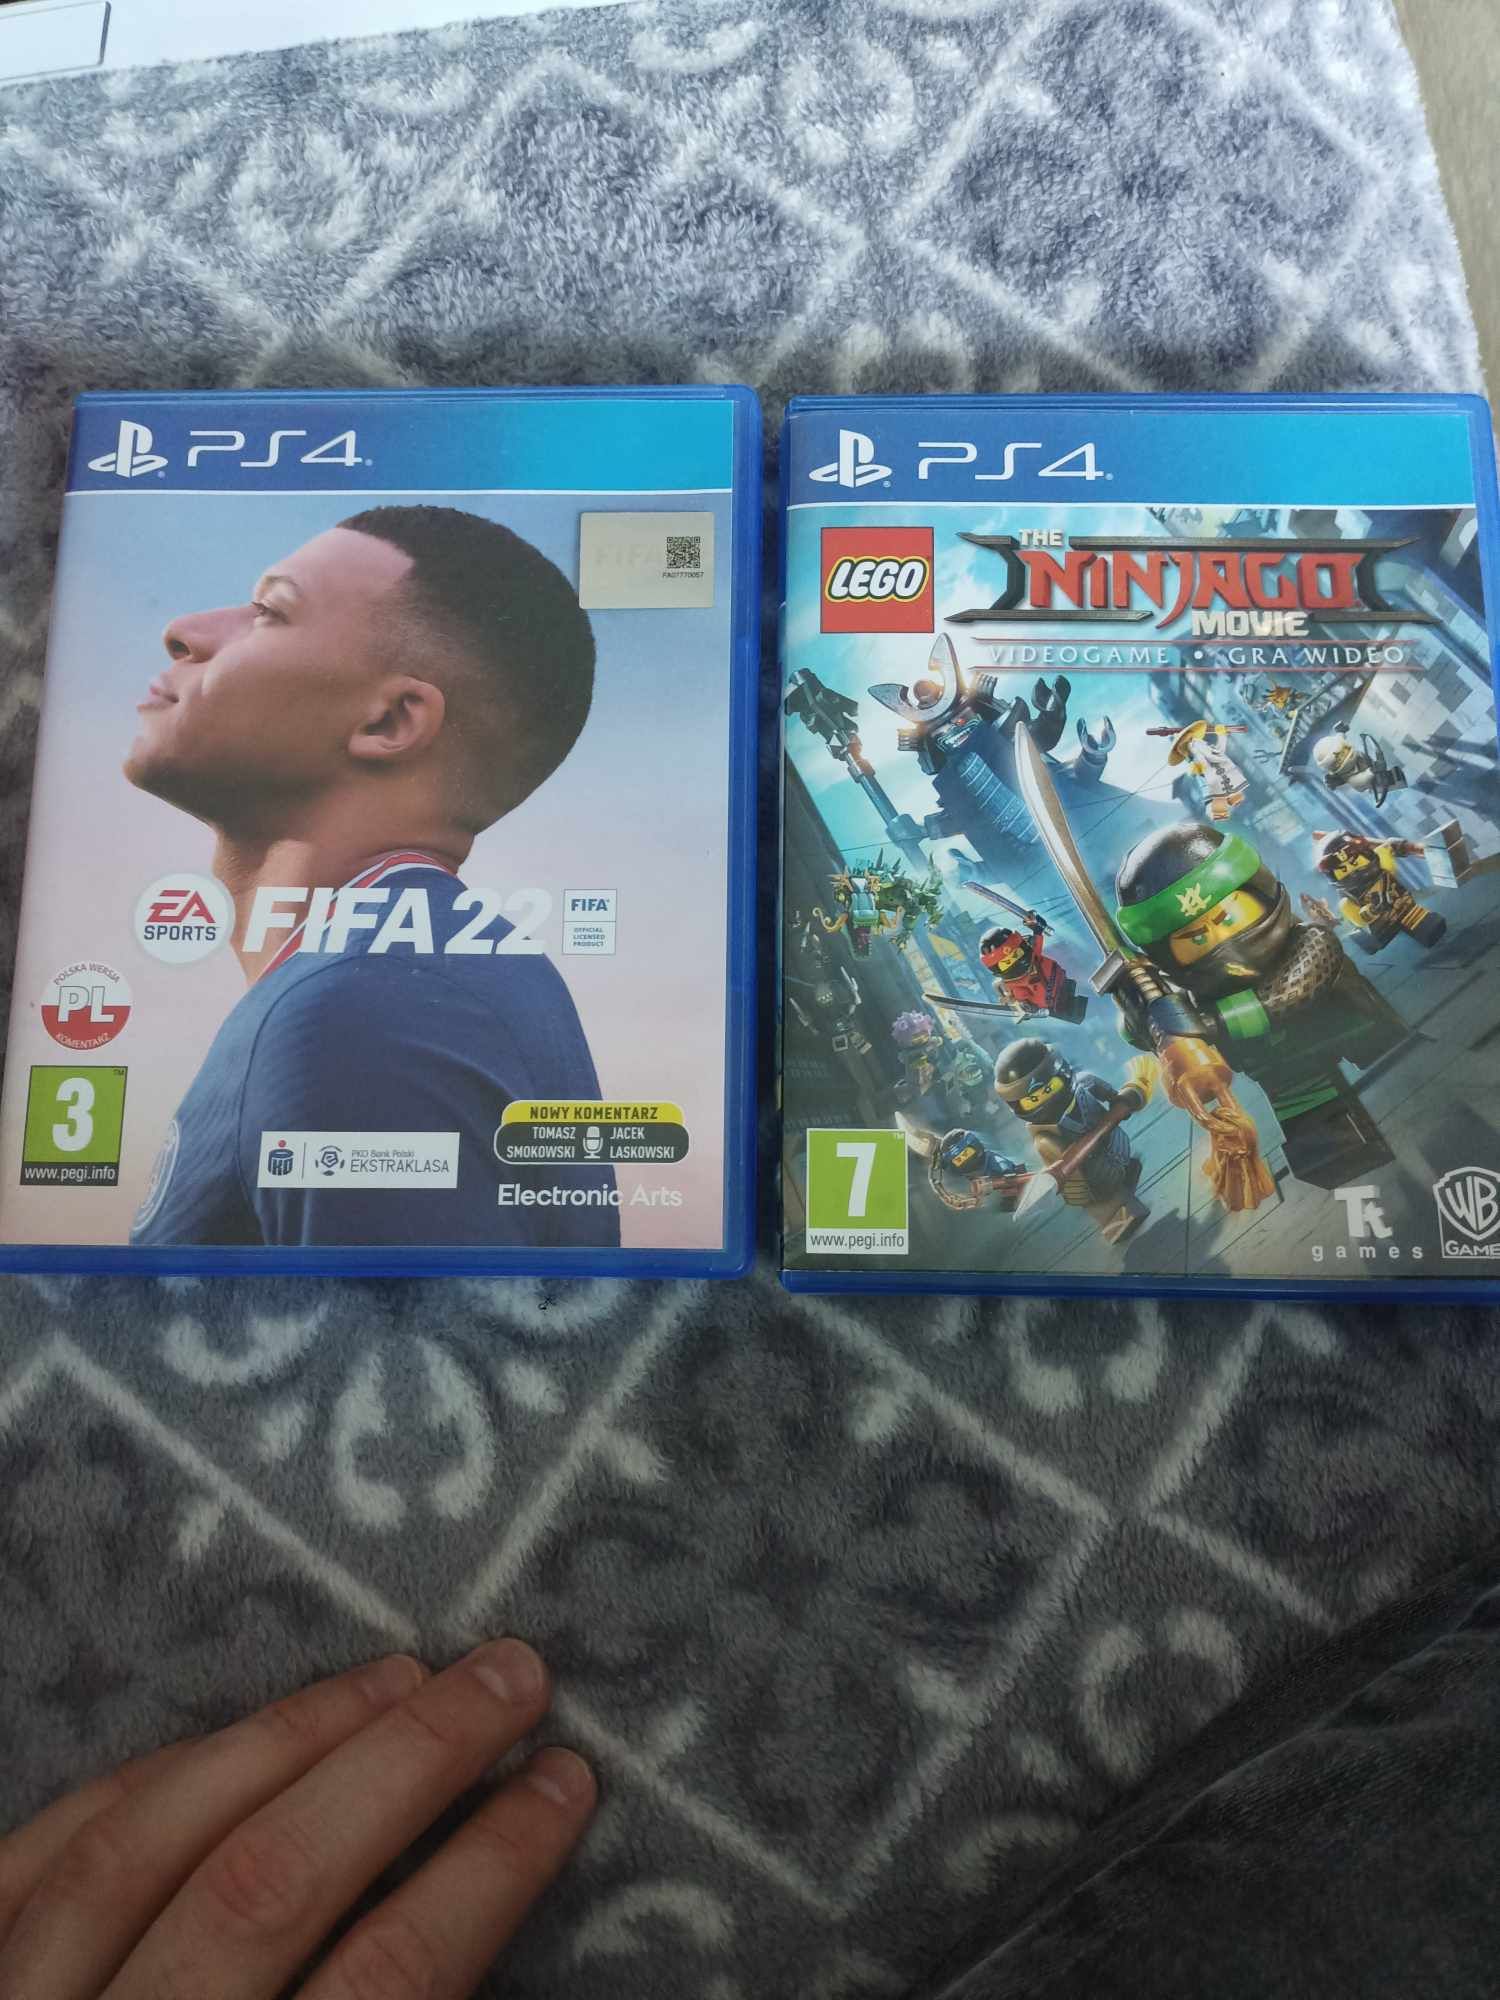 Konsola PS4 , dwa pady i gry FIFA 22 i ninjago